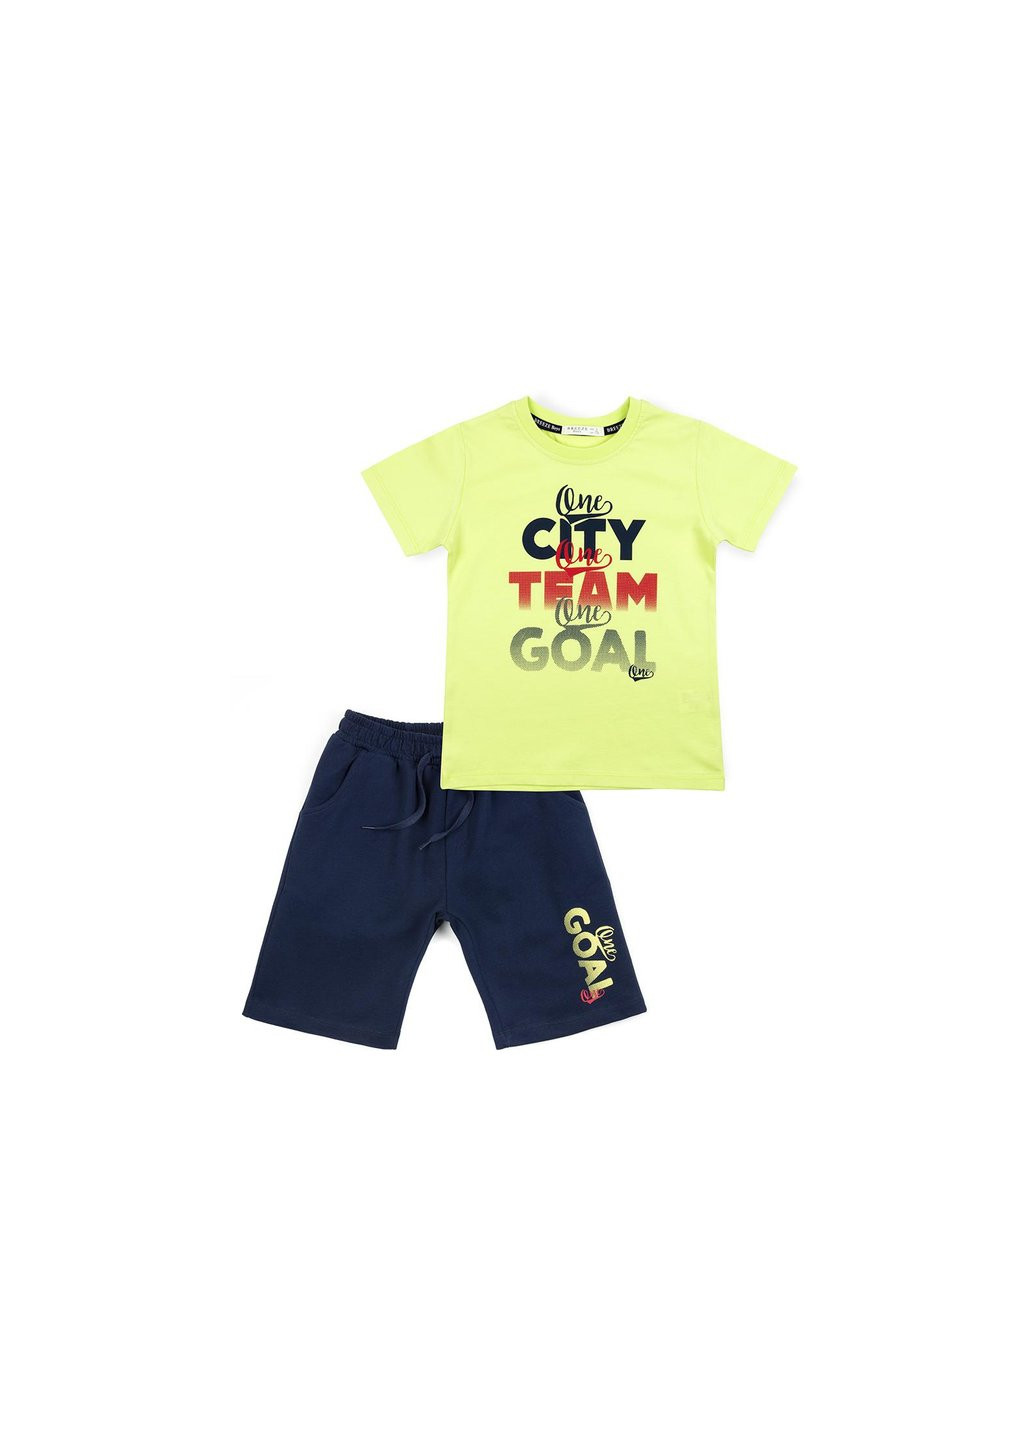 Зеленый летний набор детской одежды city team goal (12407-116b-green) Breeze